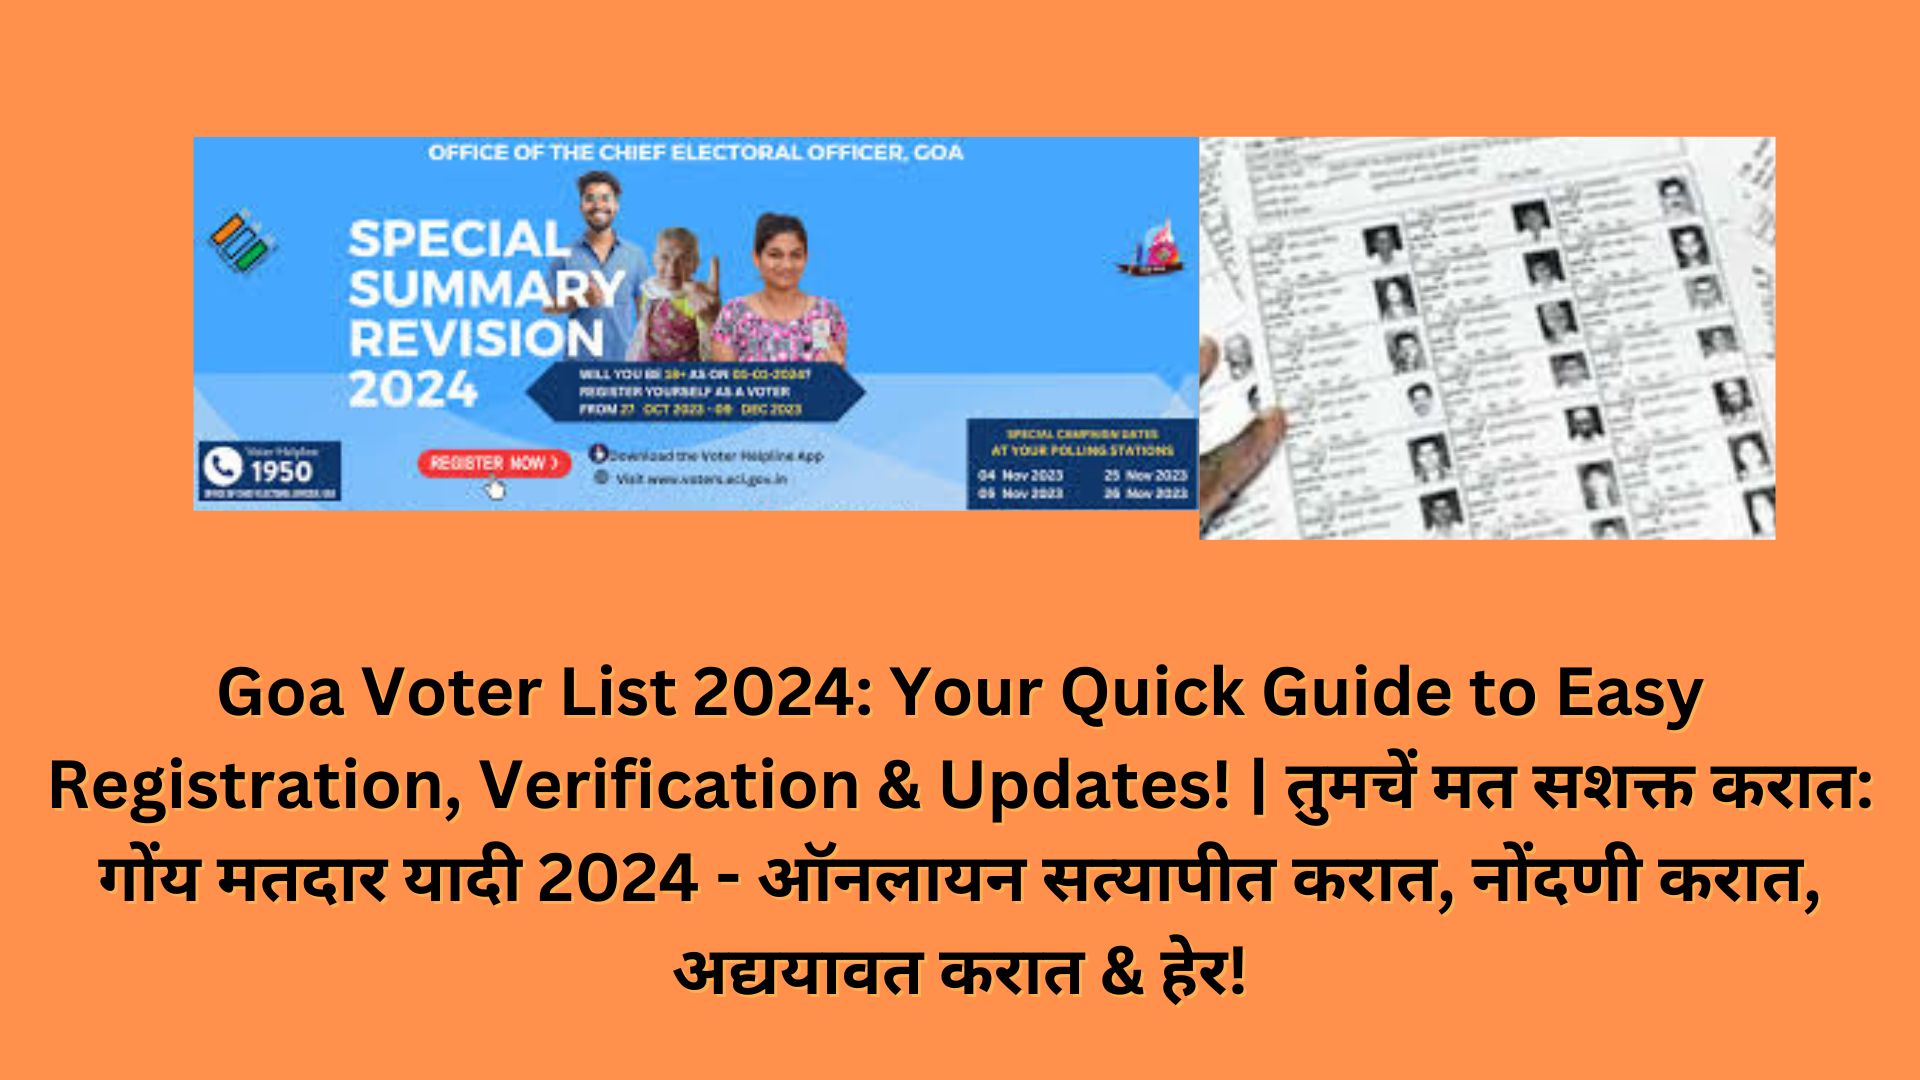 Goa Voter List 2024: Your Quick Guide to Easy Registration, Verification & Updates! | तुमचें मत सशक्त करात: गोंय मतदार यादी 2024 - ऑनलायन सत्यापीत करात, नोंदणी करात, अद्ययावत करात & हेर!